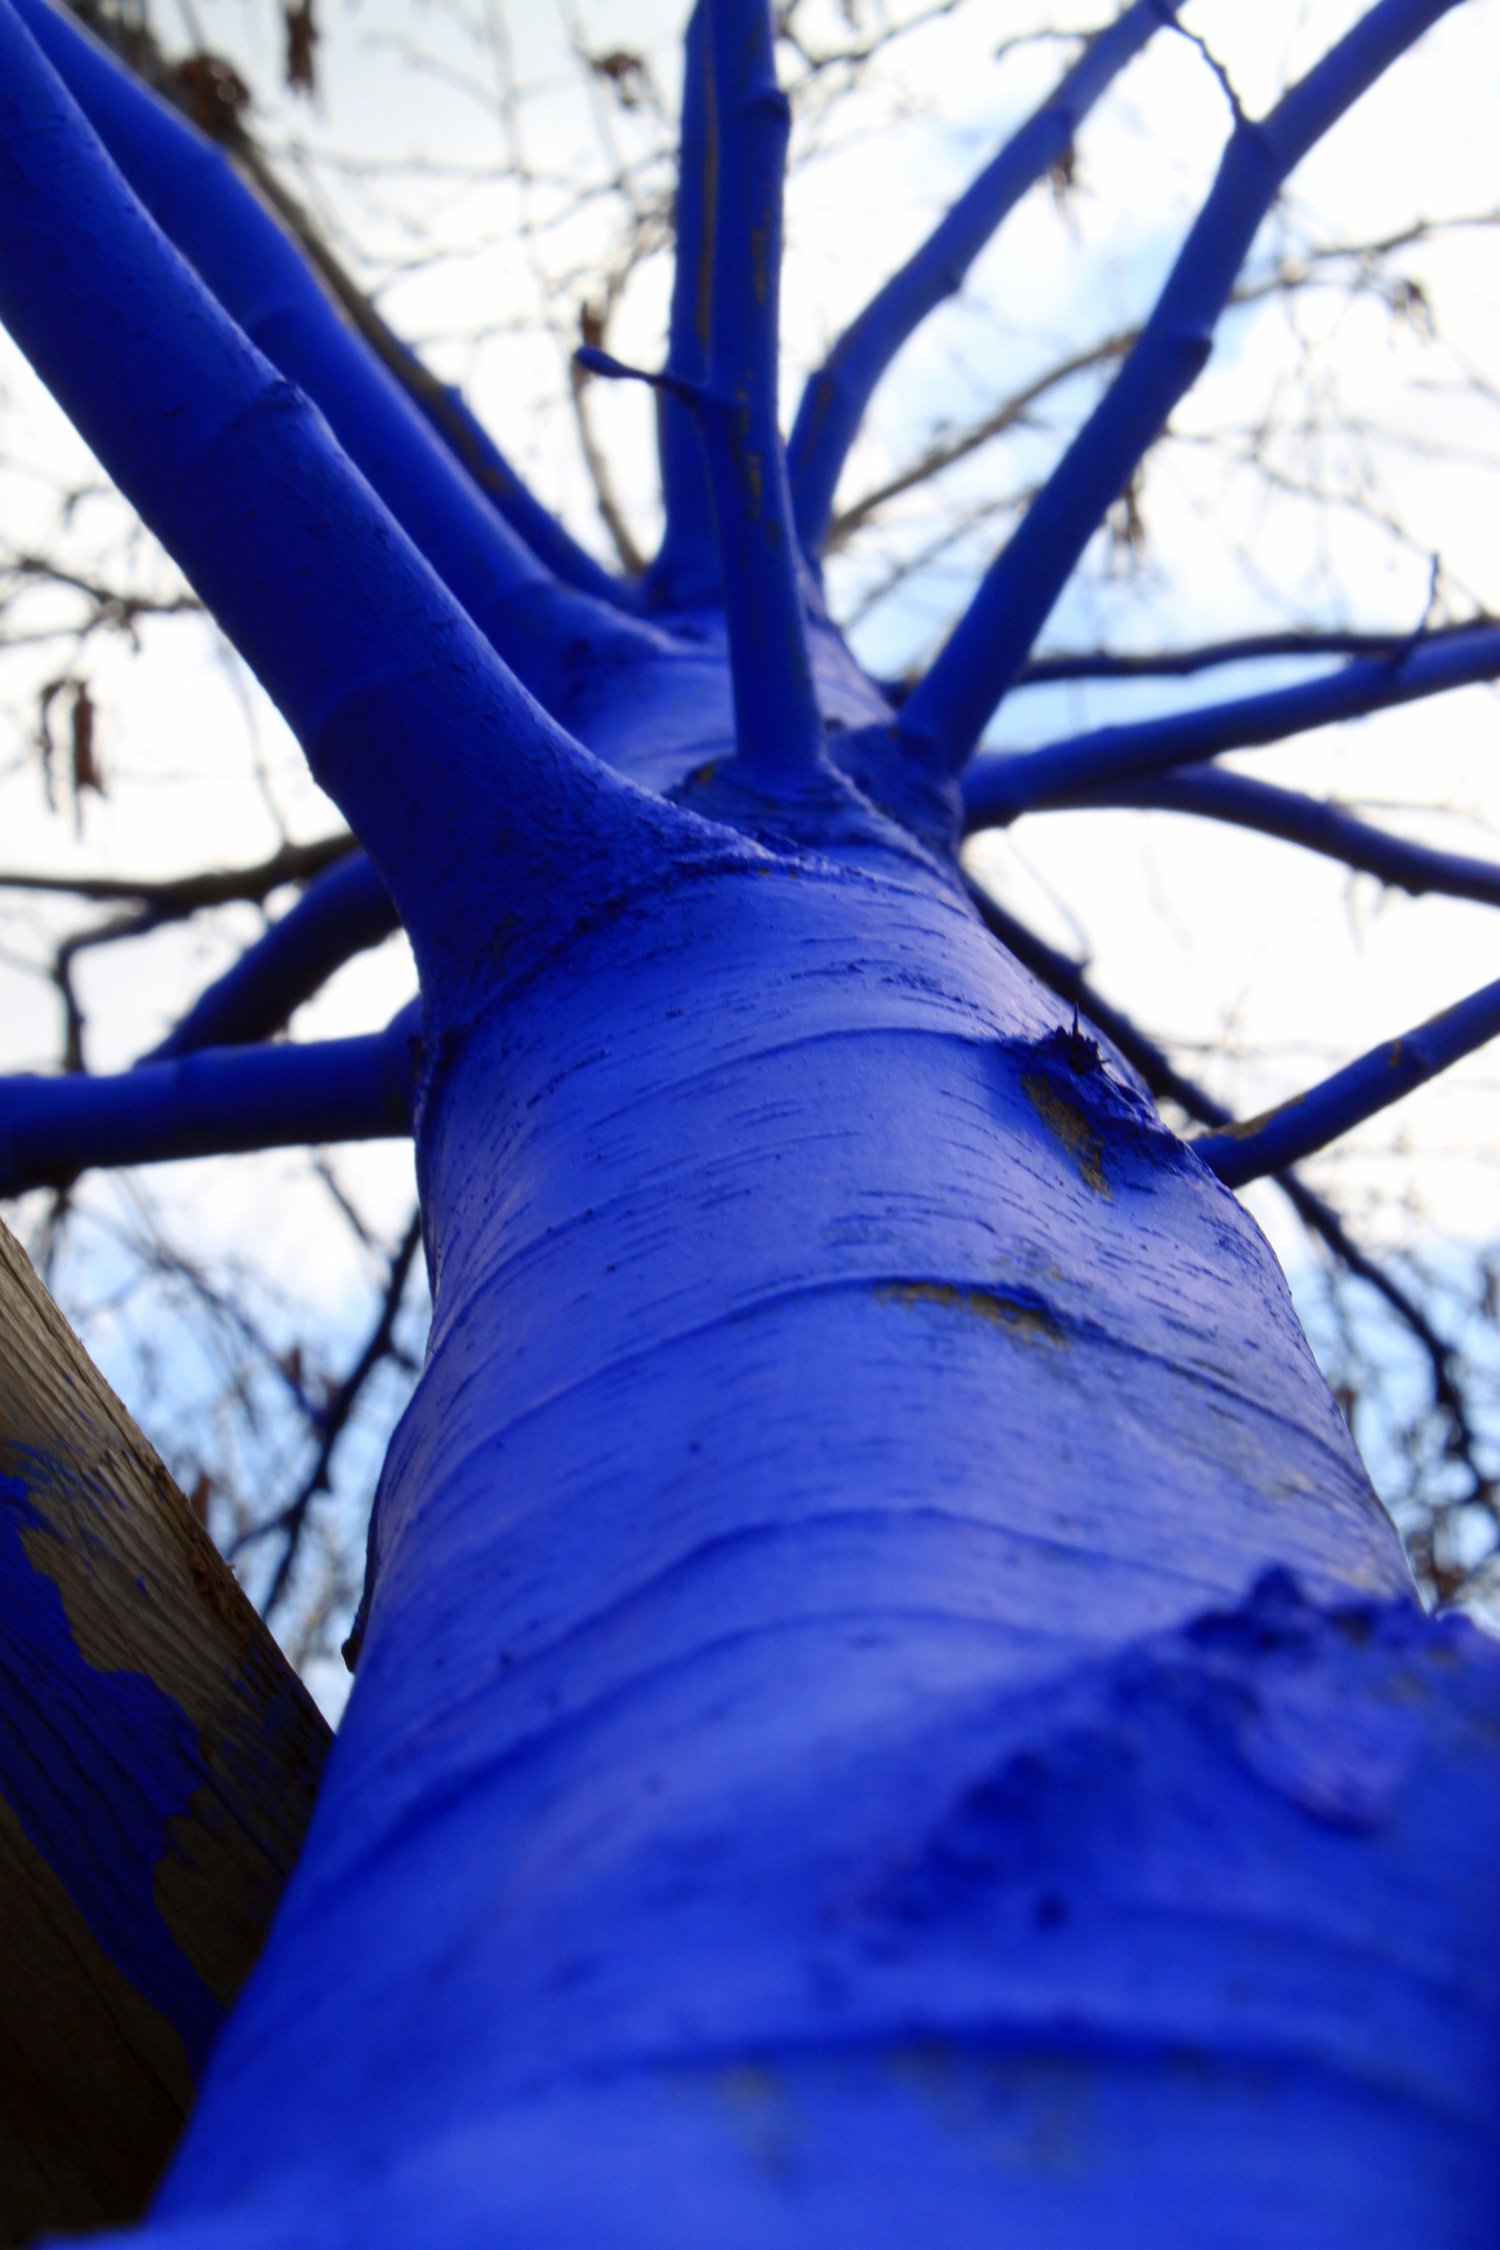 Можно ли стволы деревьев красить. Синие деревья Константина Димопулоса. Синее дерево. Покрашенное дерево. Дерево с синим стволом.